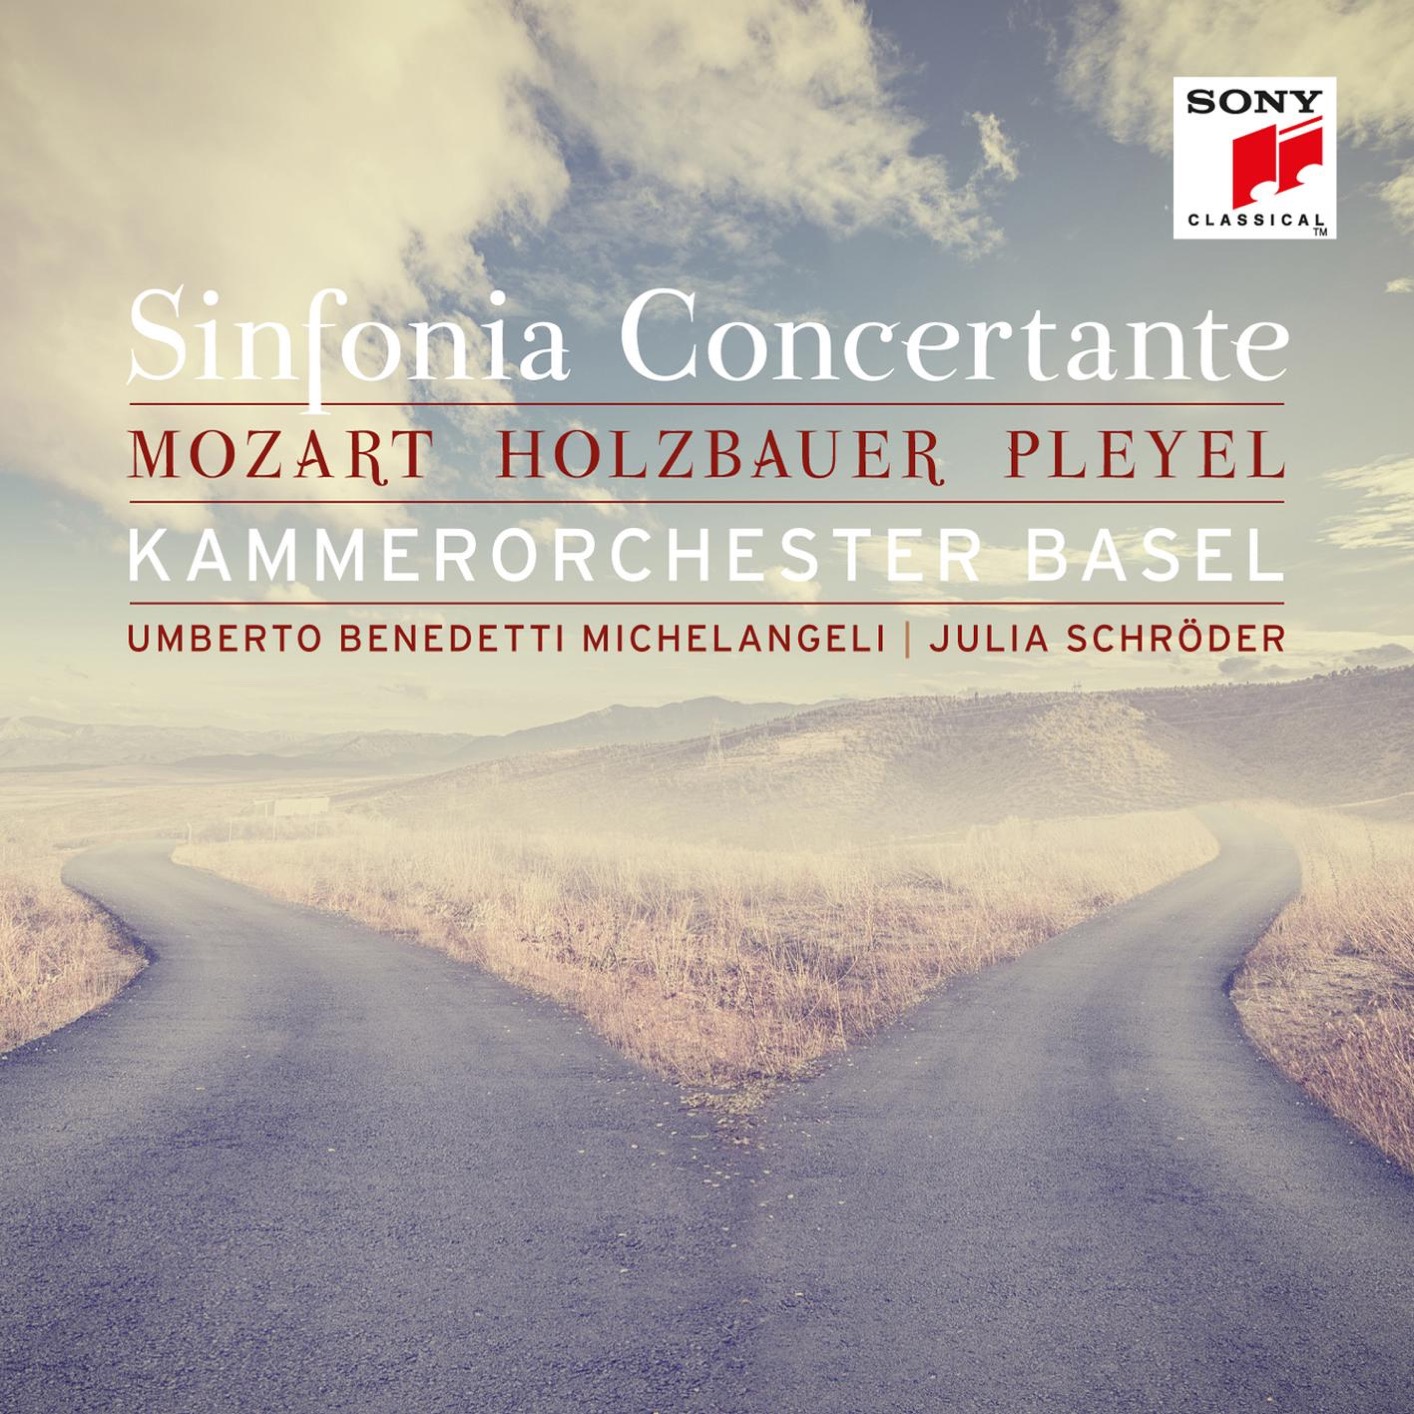 Kammerorchester Basel & Julia Schroder - Mozart, Holzbauer & Pleyel: Sinfonia Concertante (2017) [Qobuz FLAC 24bit/96kHz]